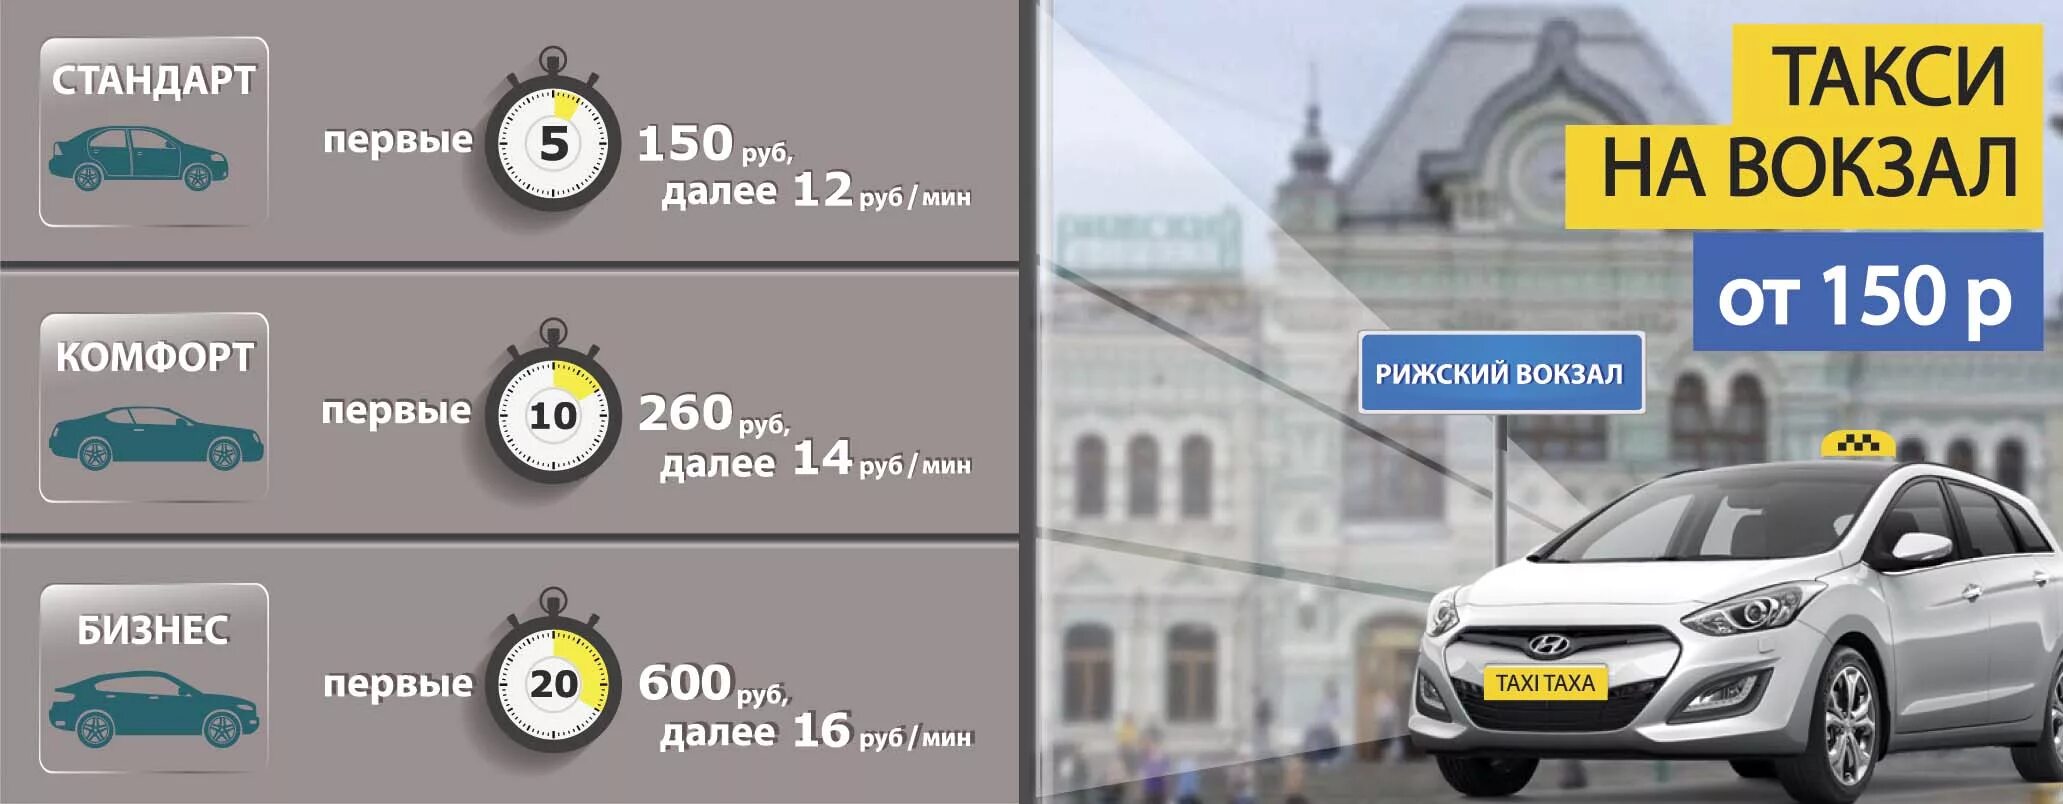 Калькулятор такси москва. Такси на вокзал. Московское такси. Белорусский вокзал такси. Такси до Москвы.